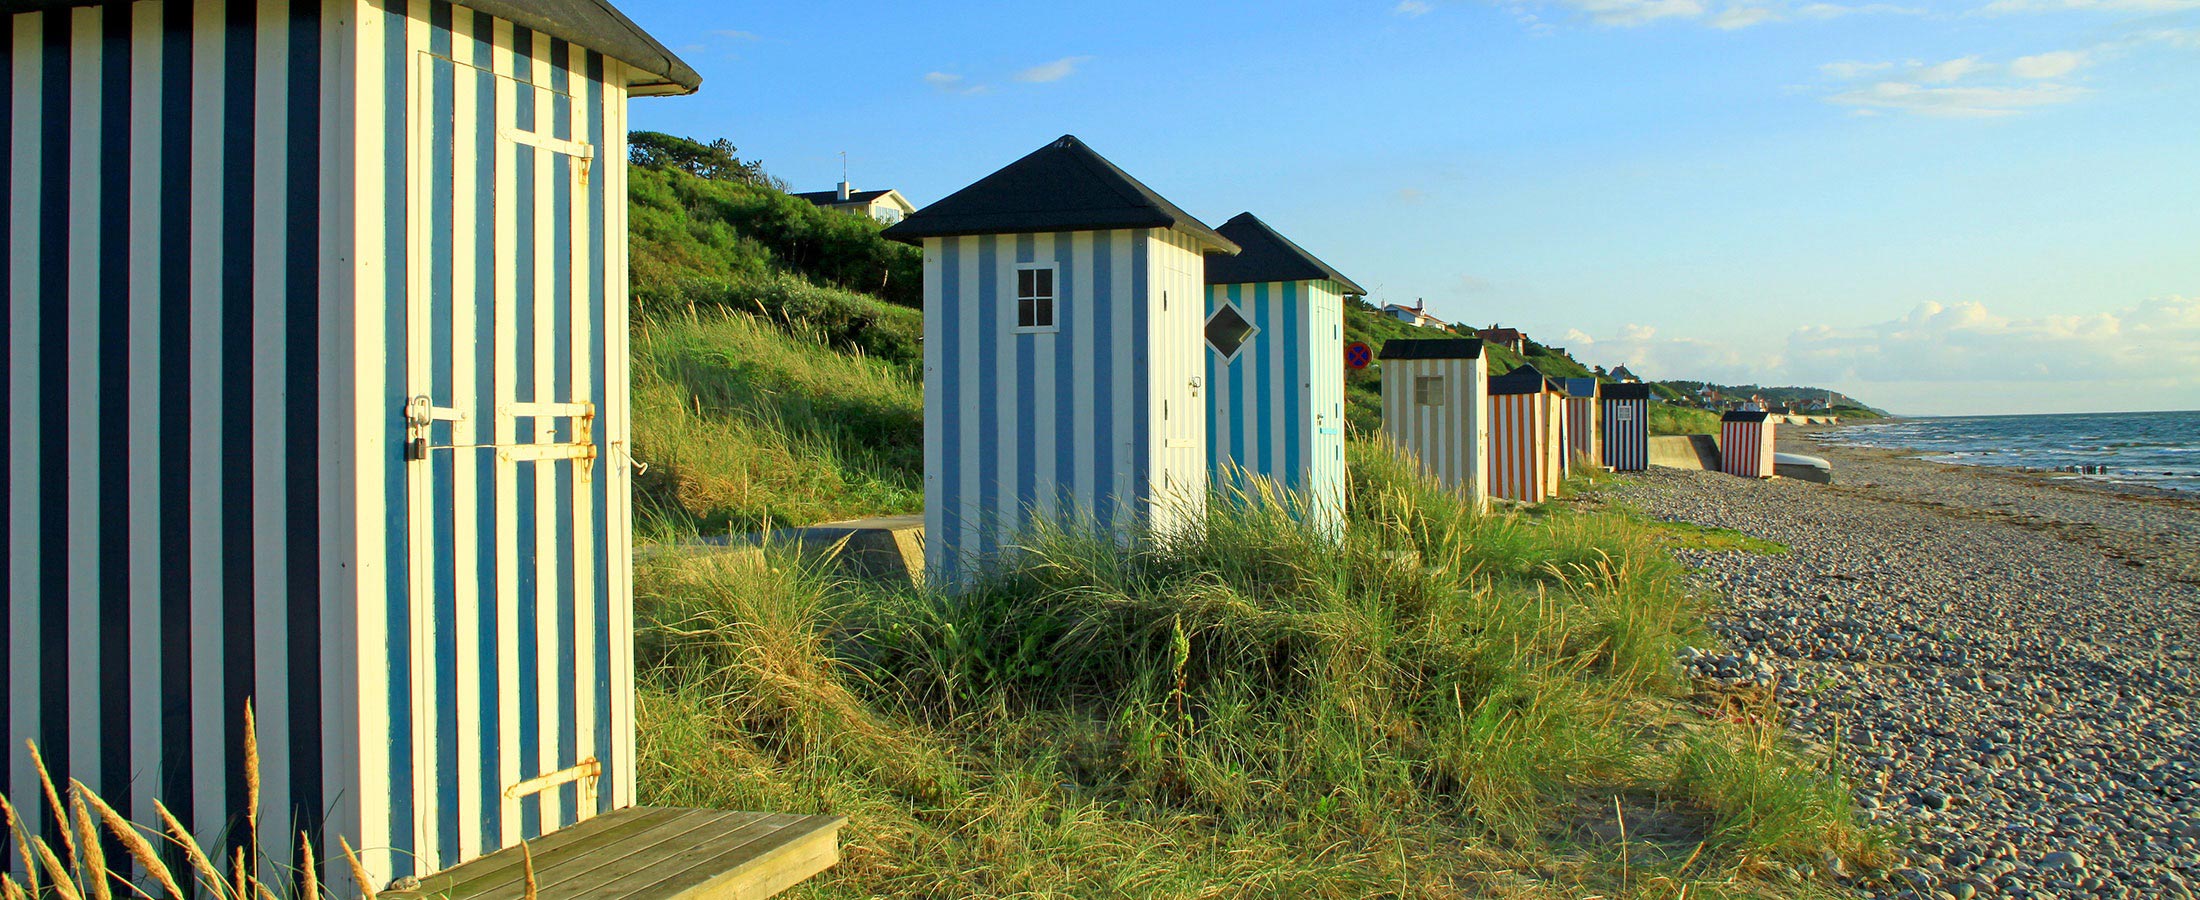 Traditionelle, gestreifte Strandhäuser auf dem Rågeleje Strand in Dänemark